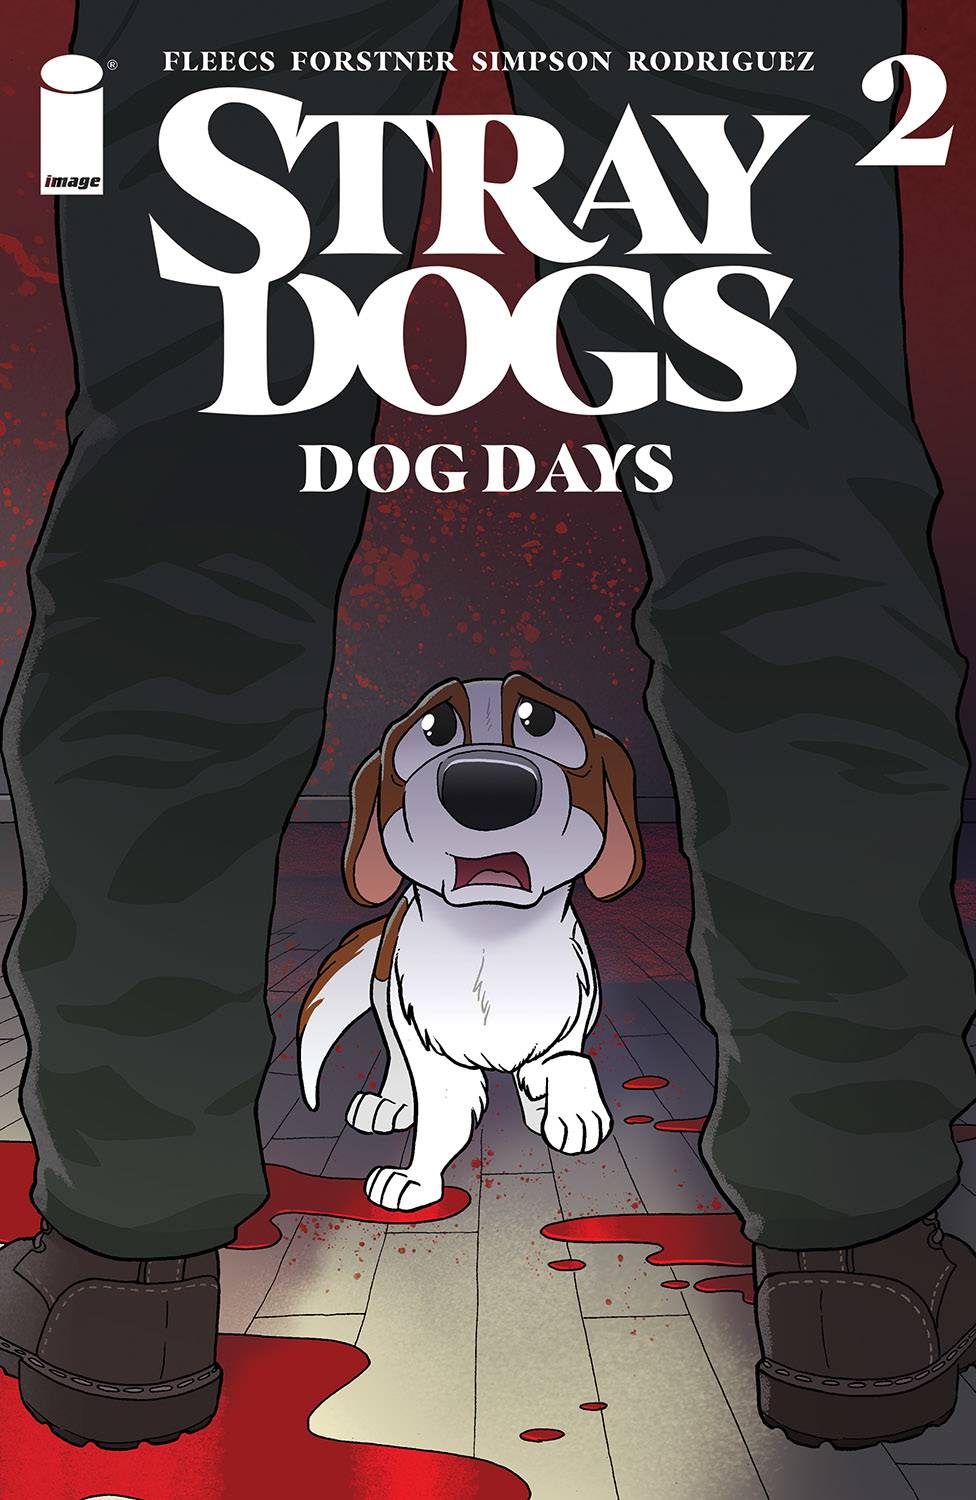 Stray Dogs Dog Days #1 (Cover A - Fleecs / Forstner)